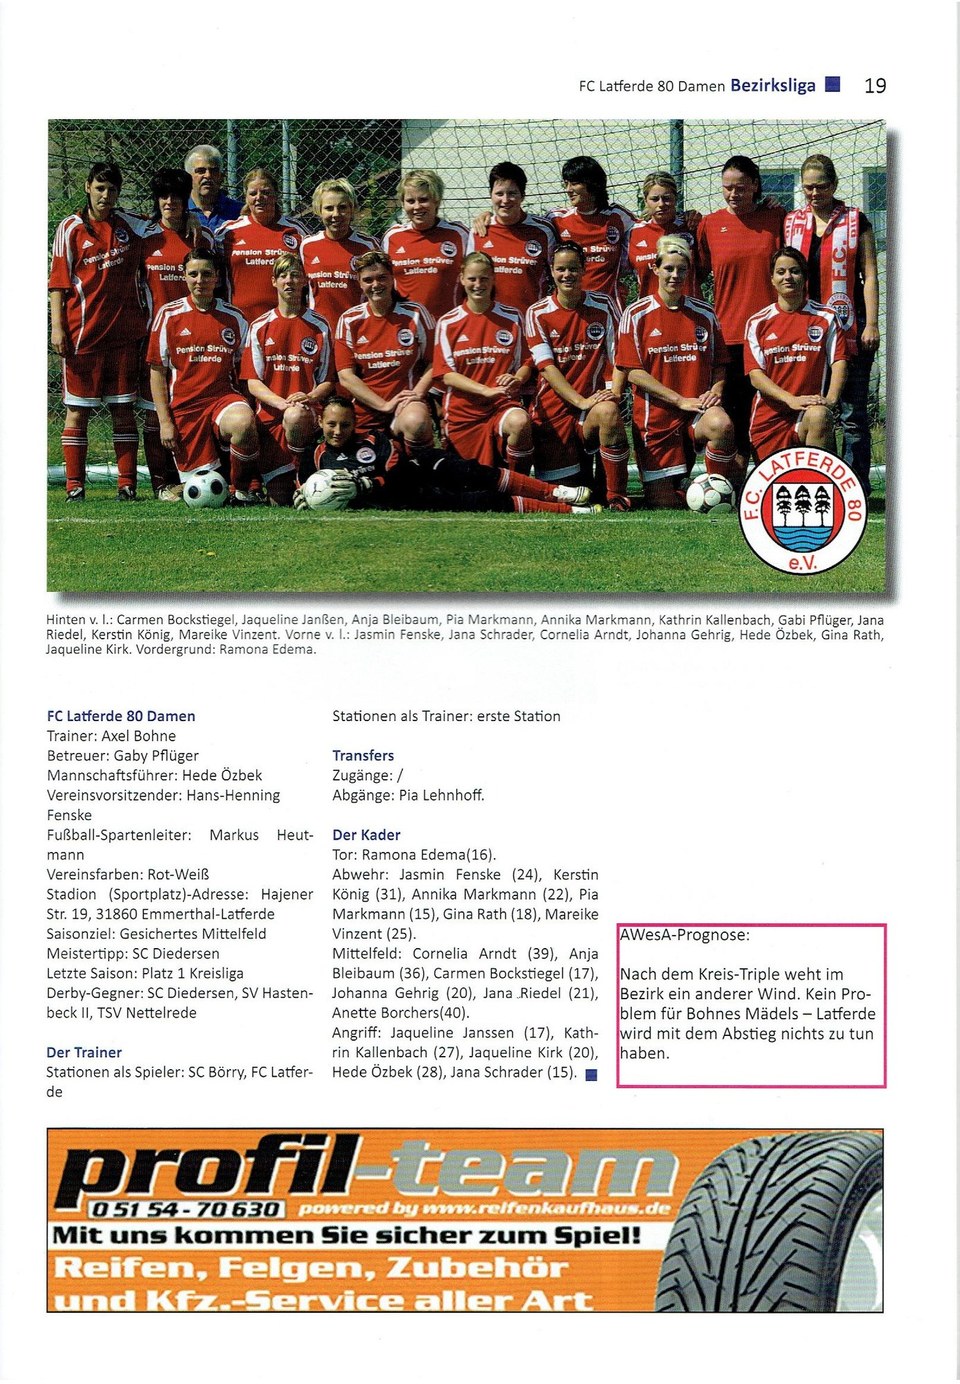 FC Latferde Frauen Bezirksliga 200910